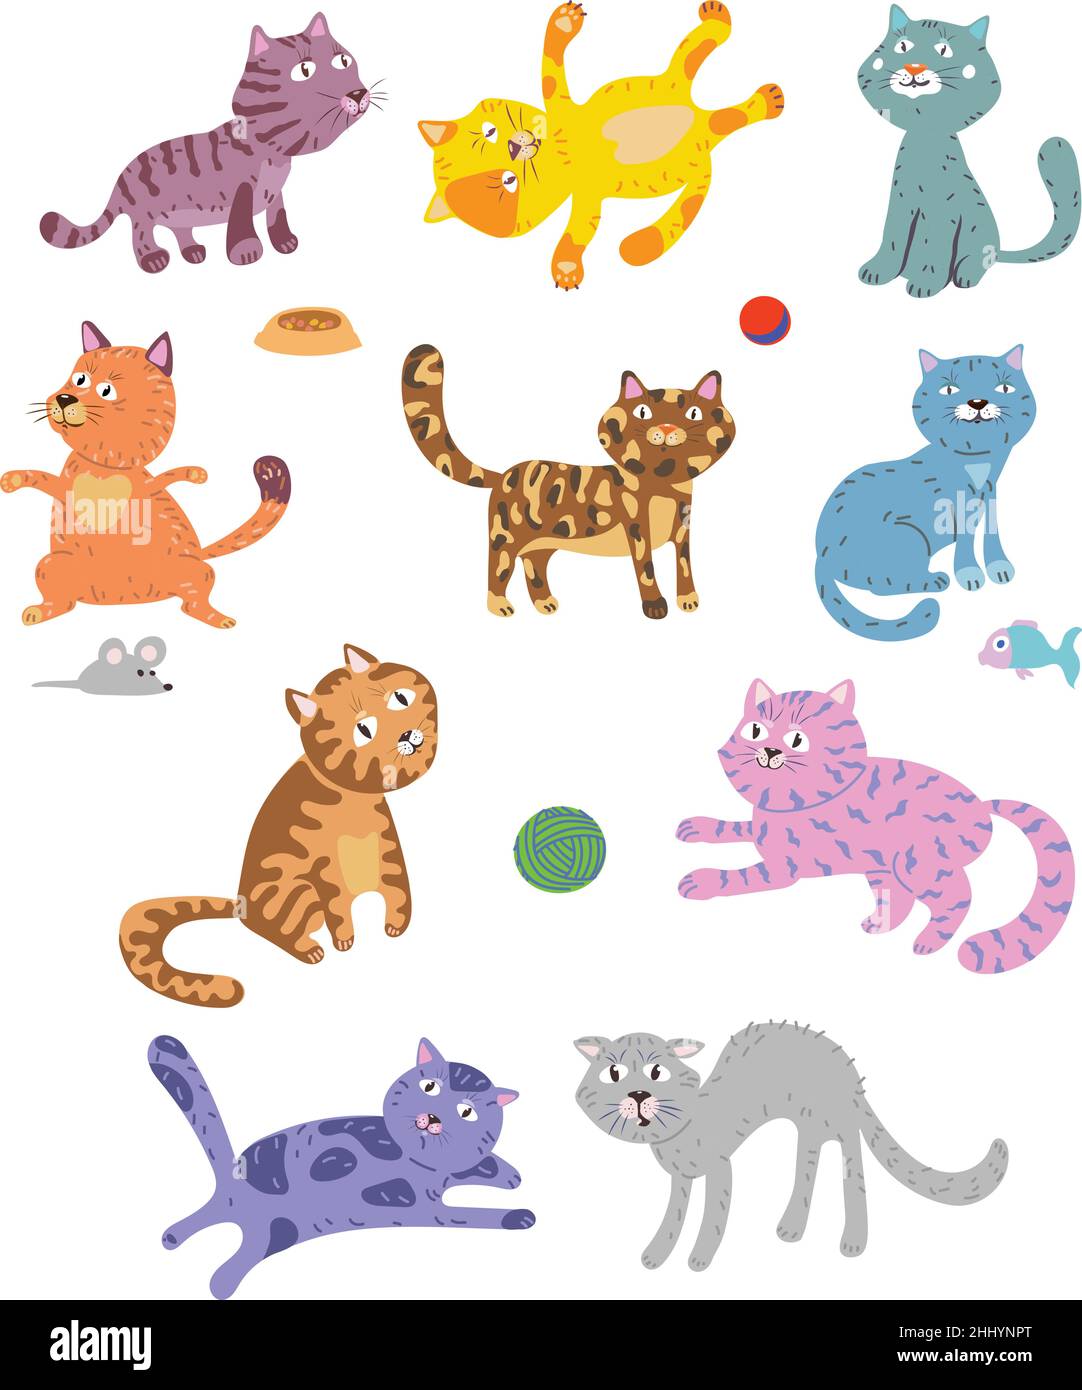 gatti divertenti, modello per bambini per decorazione e design, packaging e poster, gatto in varie pose e situazioni, disegno, vettore, immagini, cartoon Illustrazione Vettoriale